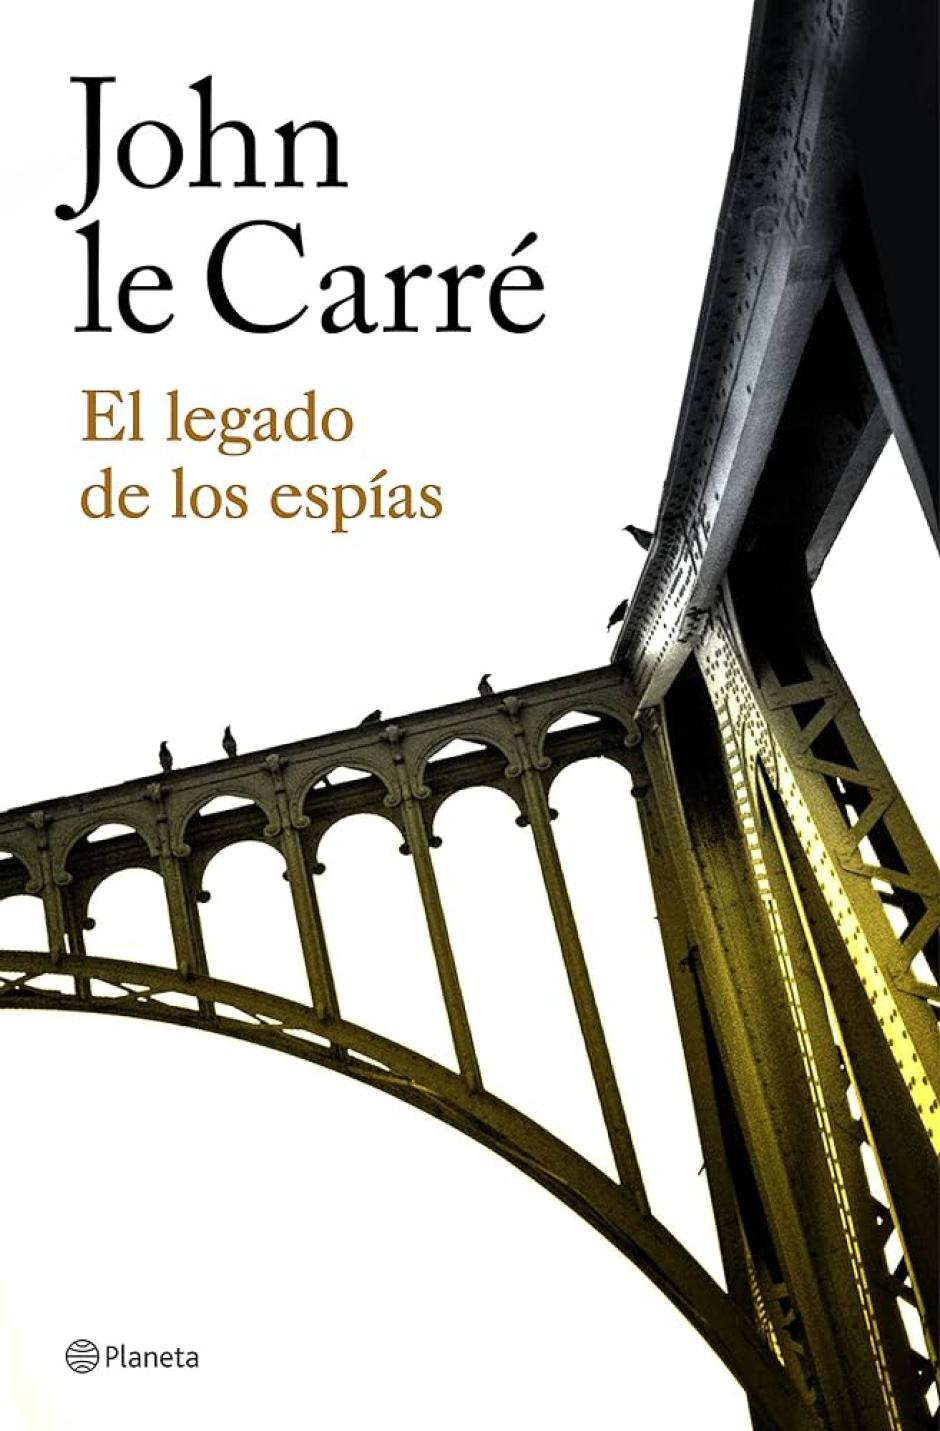 La última novela que John Le Carré publicó en vida sobre su famoso espía Smiley fue 'El legado de los espías', en 2017